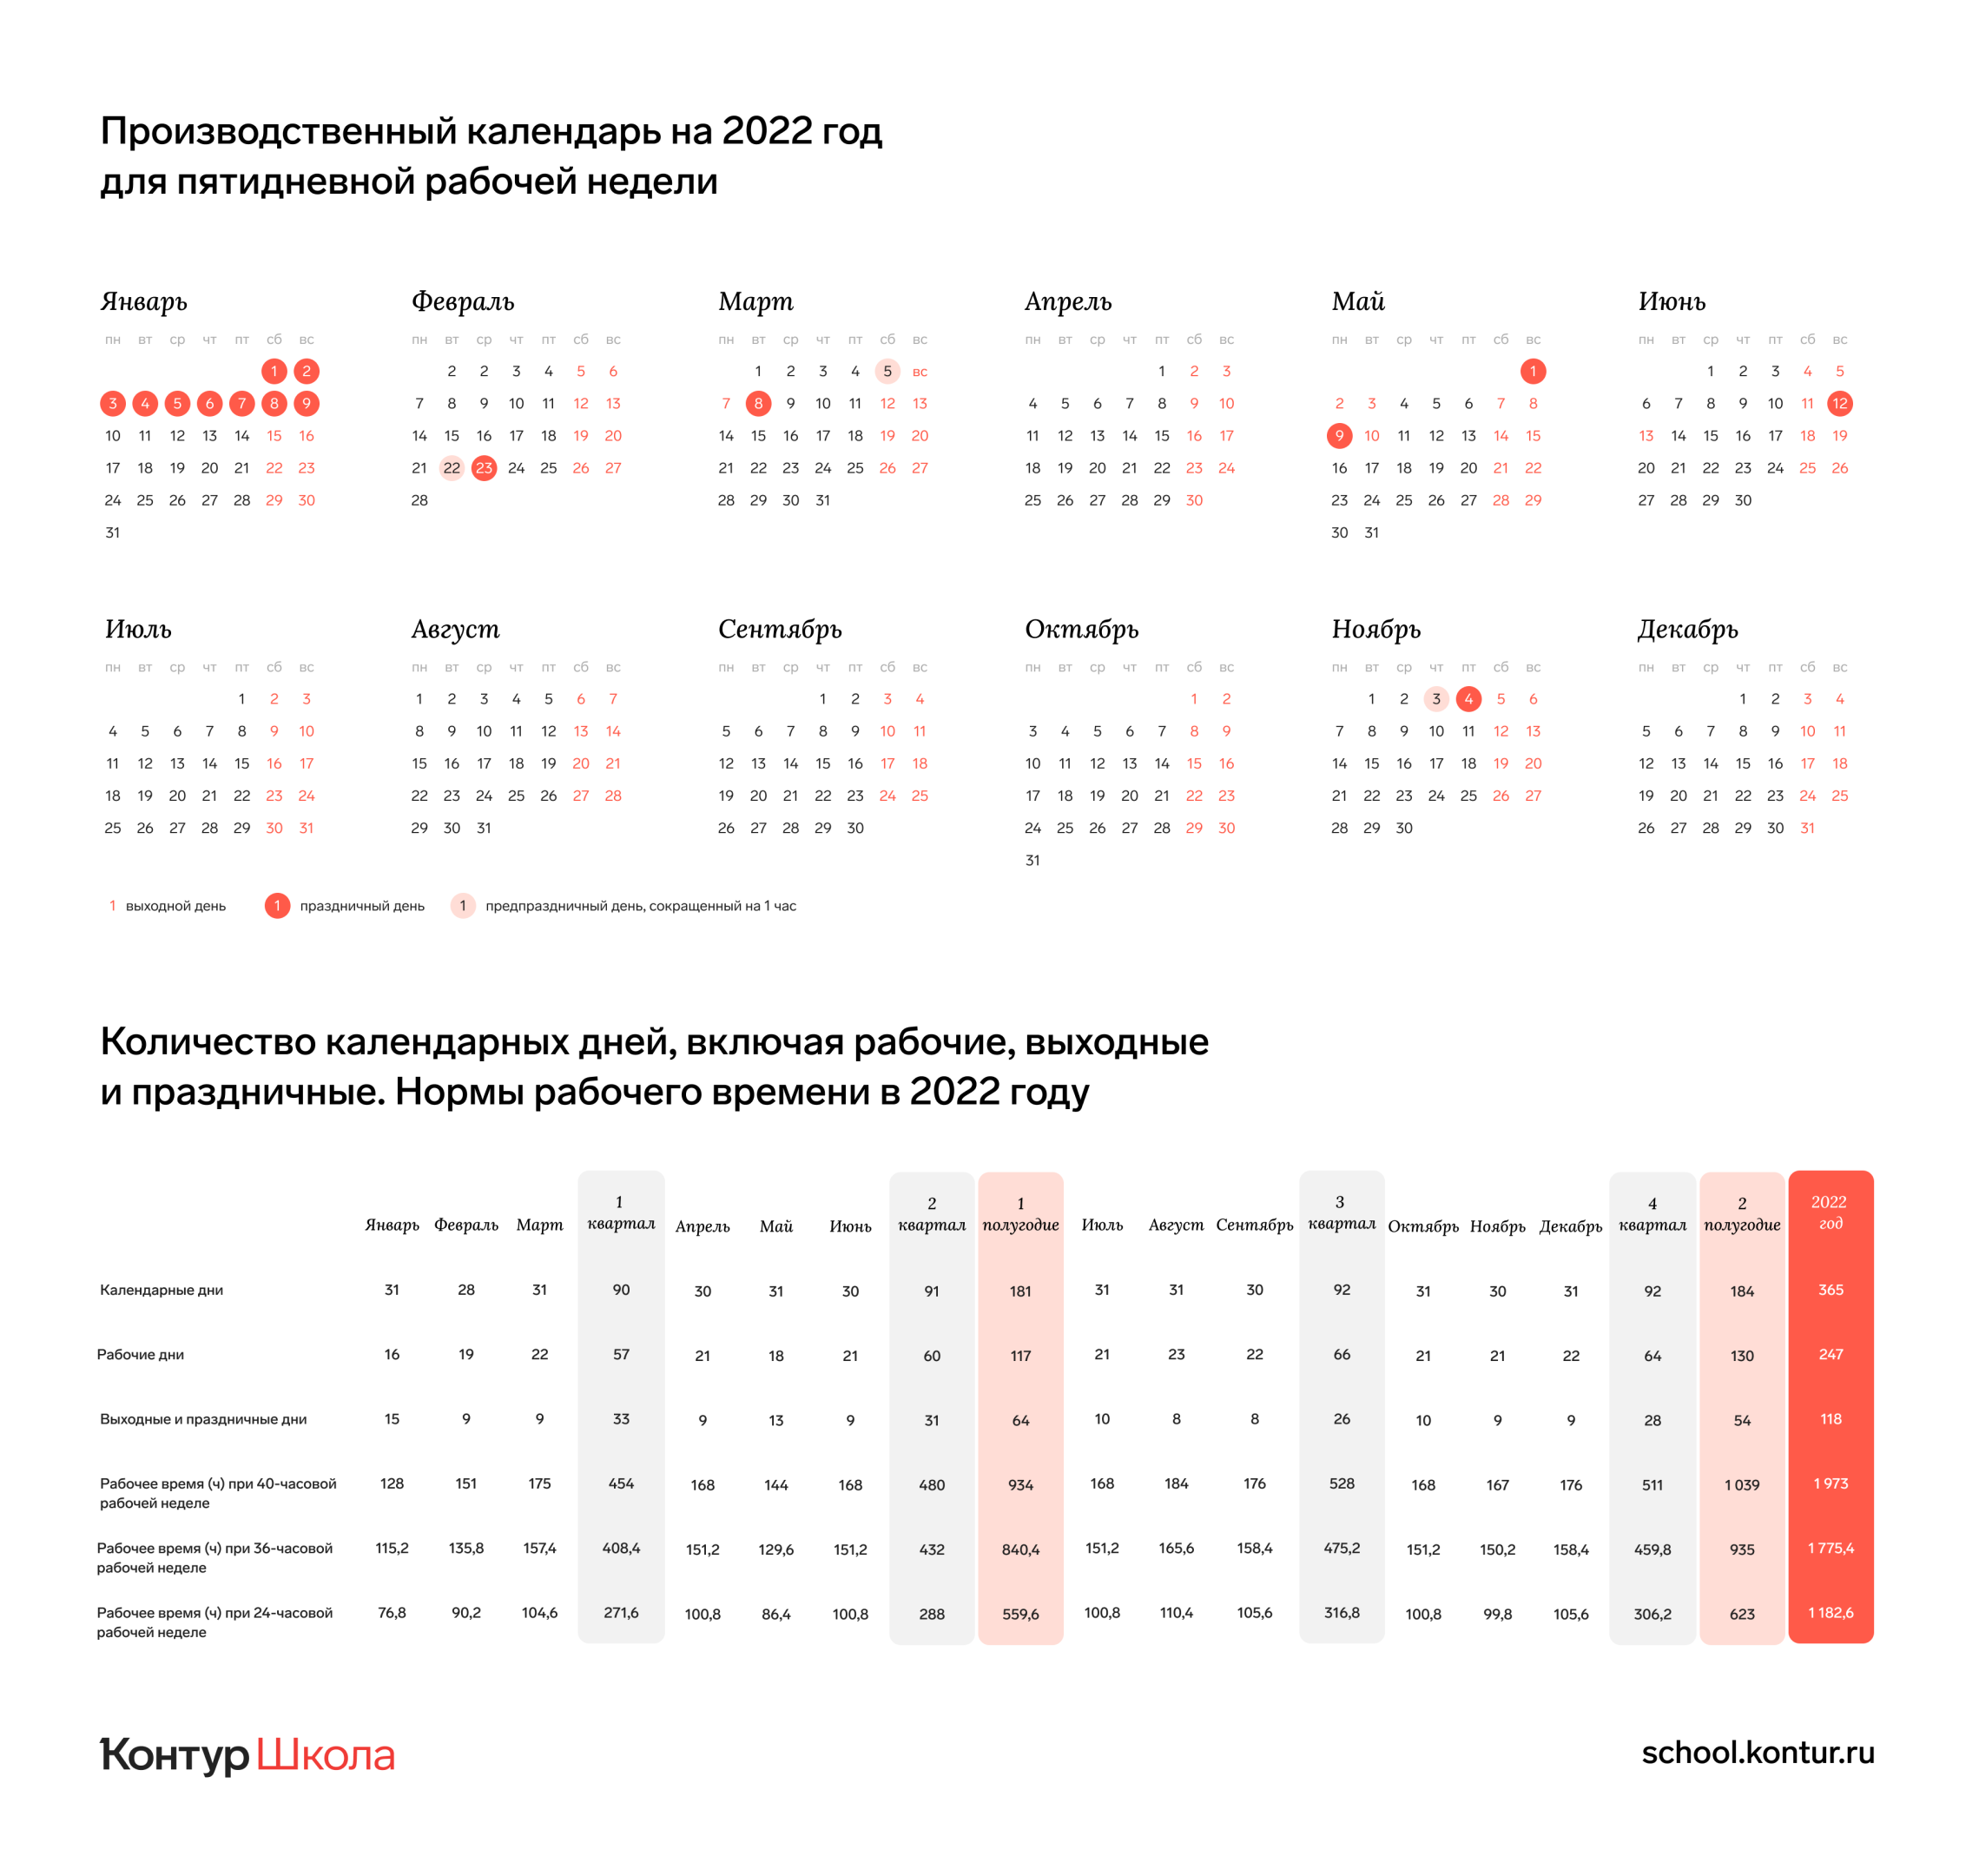 Производственный календарь на 2022 год в россии